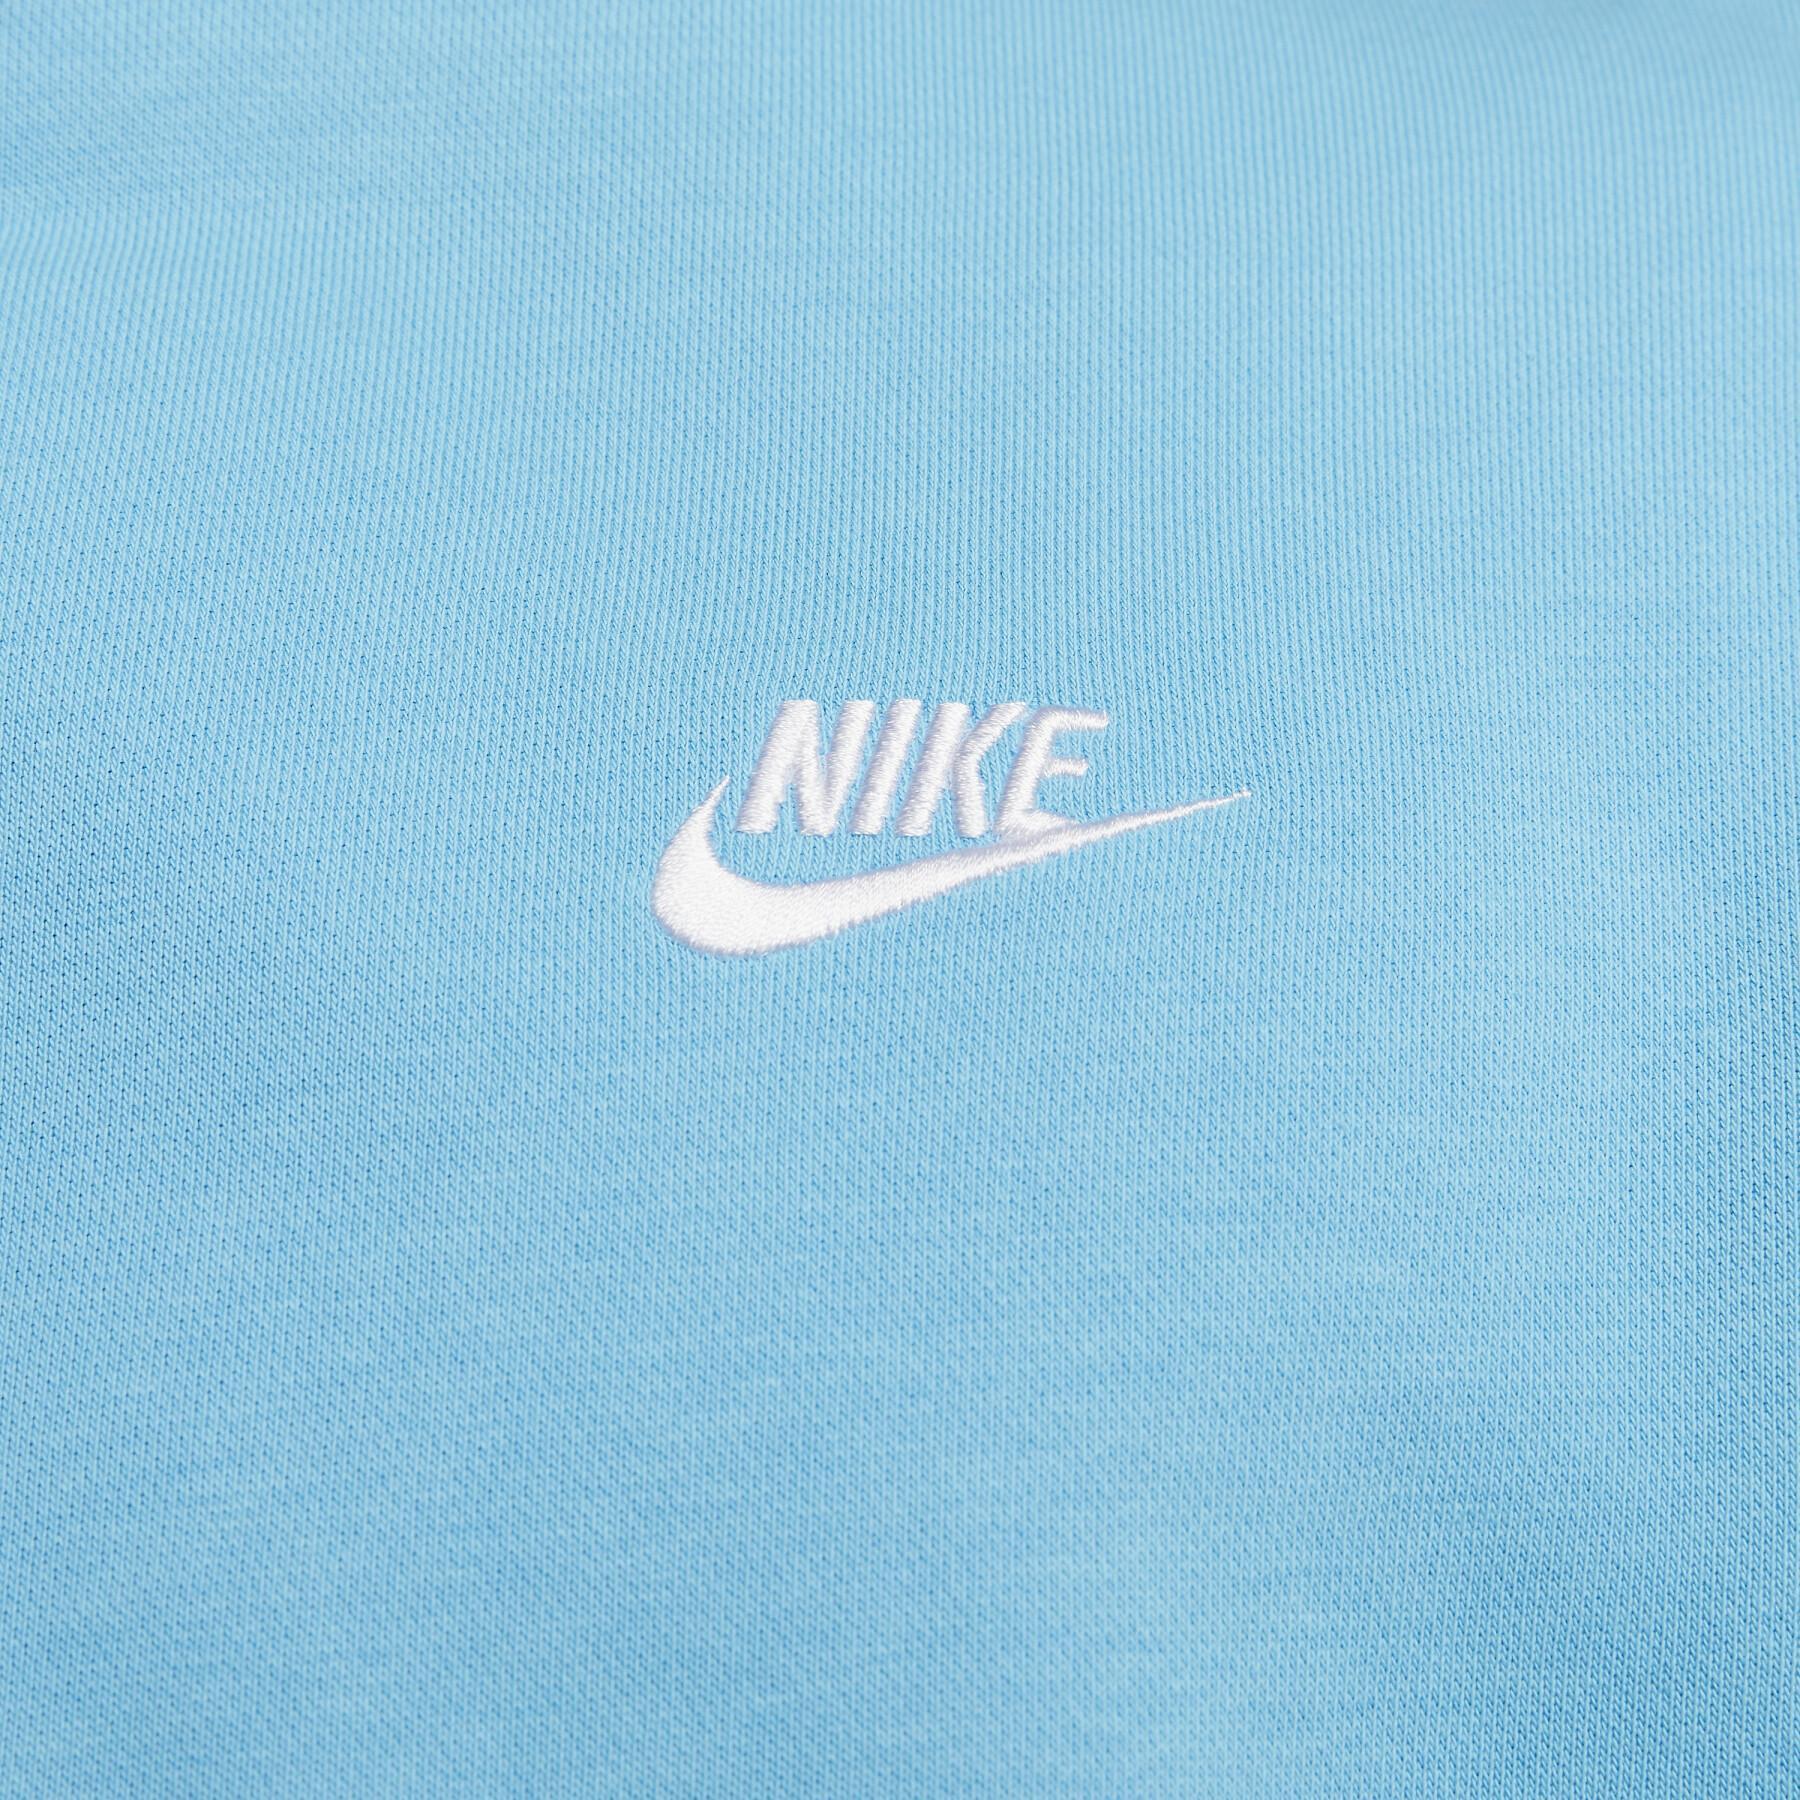 Sweatshirt med huva Nike Club